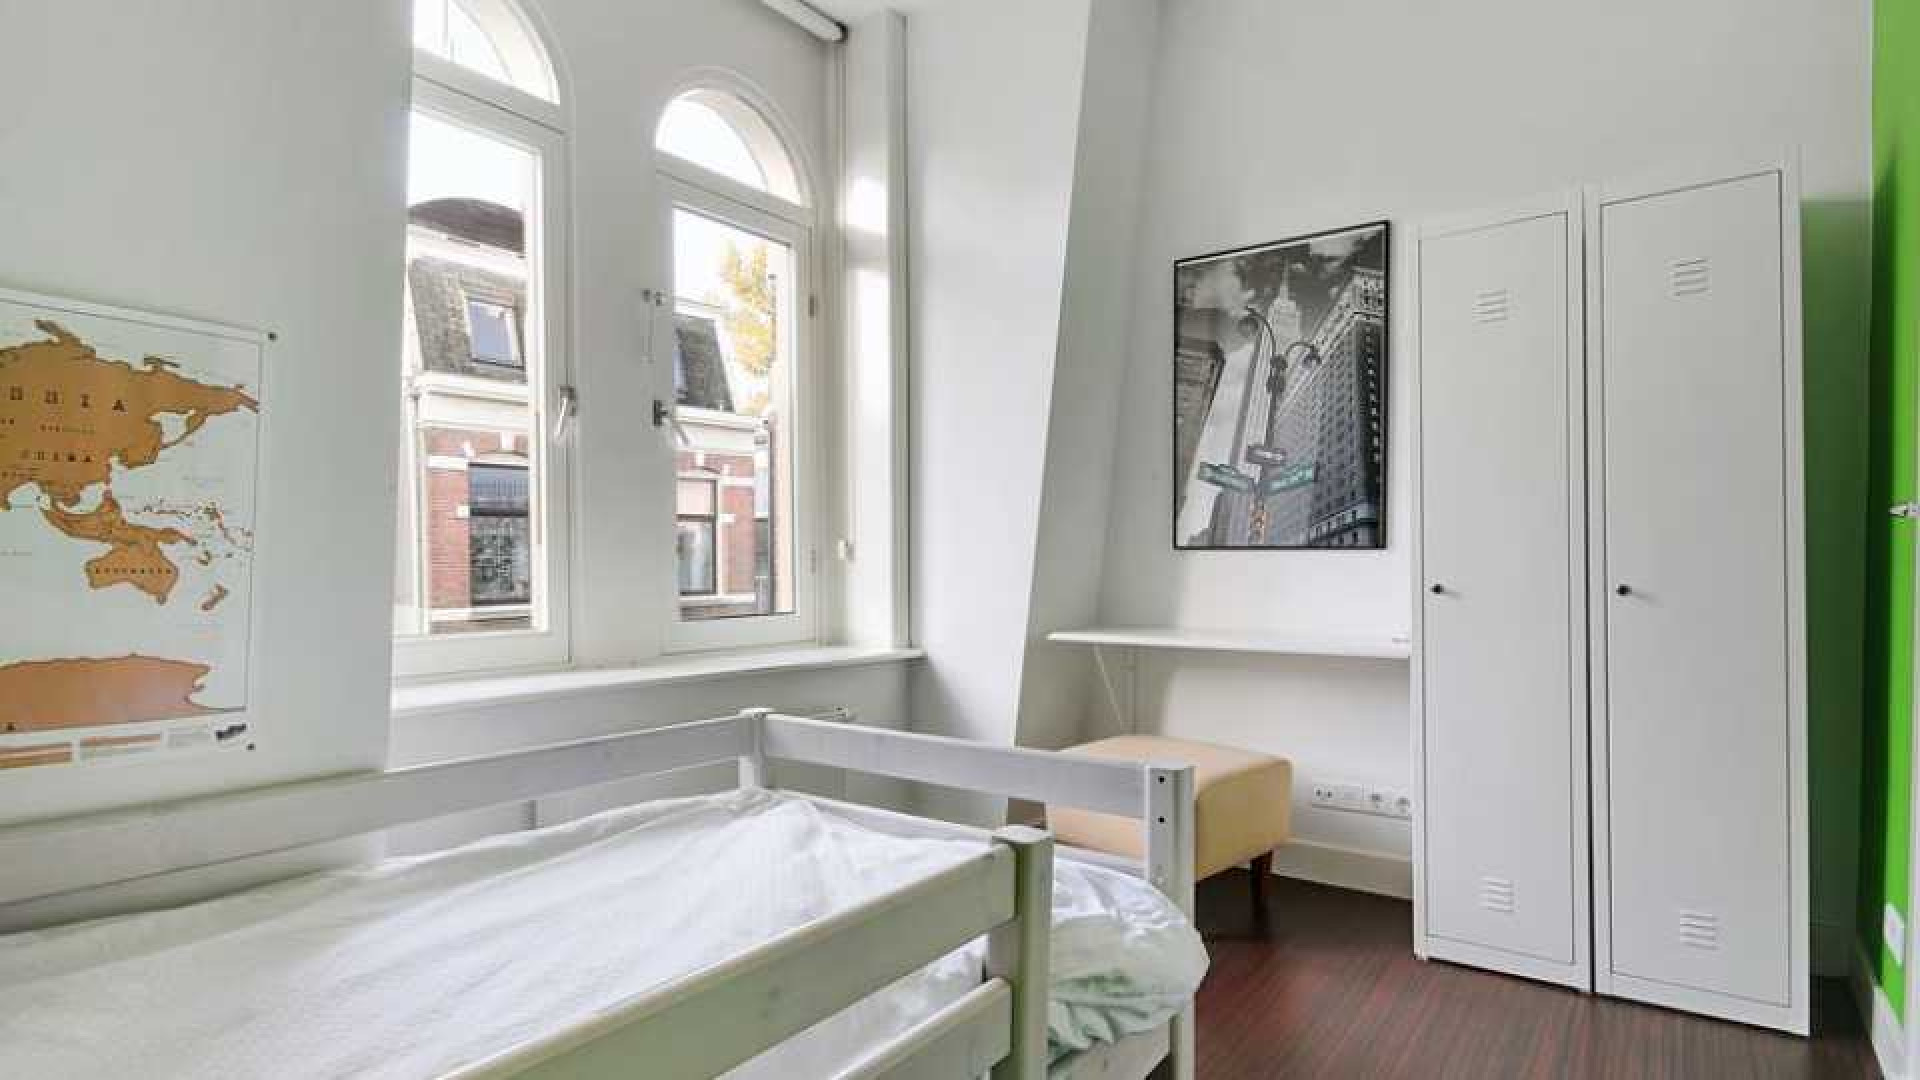 Leco van Zadelhoff koopt voor miljoen euro luxe appartement. Zie foto's 12